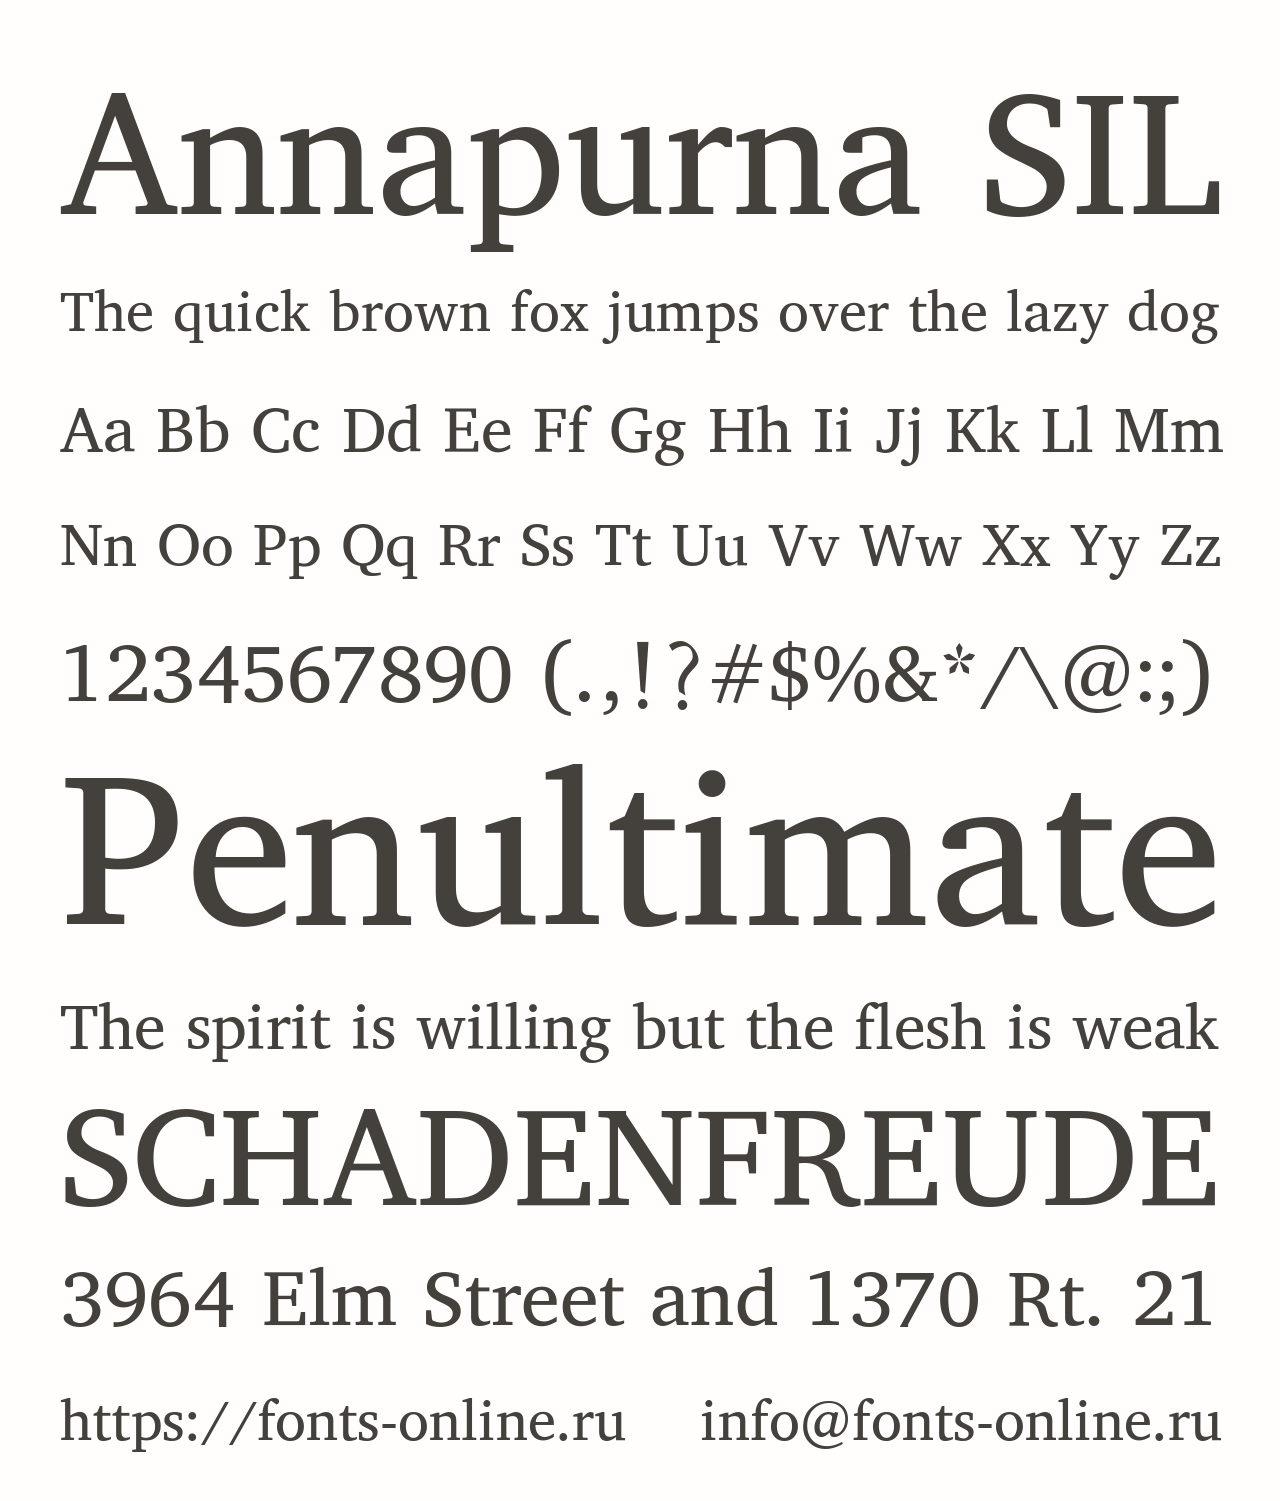 Beispiel einer Annapurna SIL-Schriftart